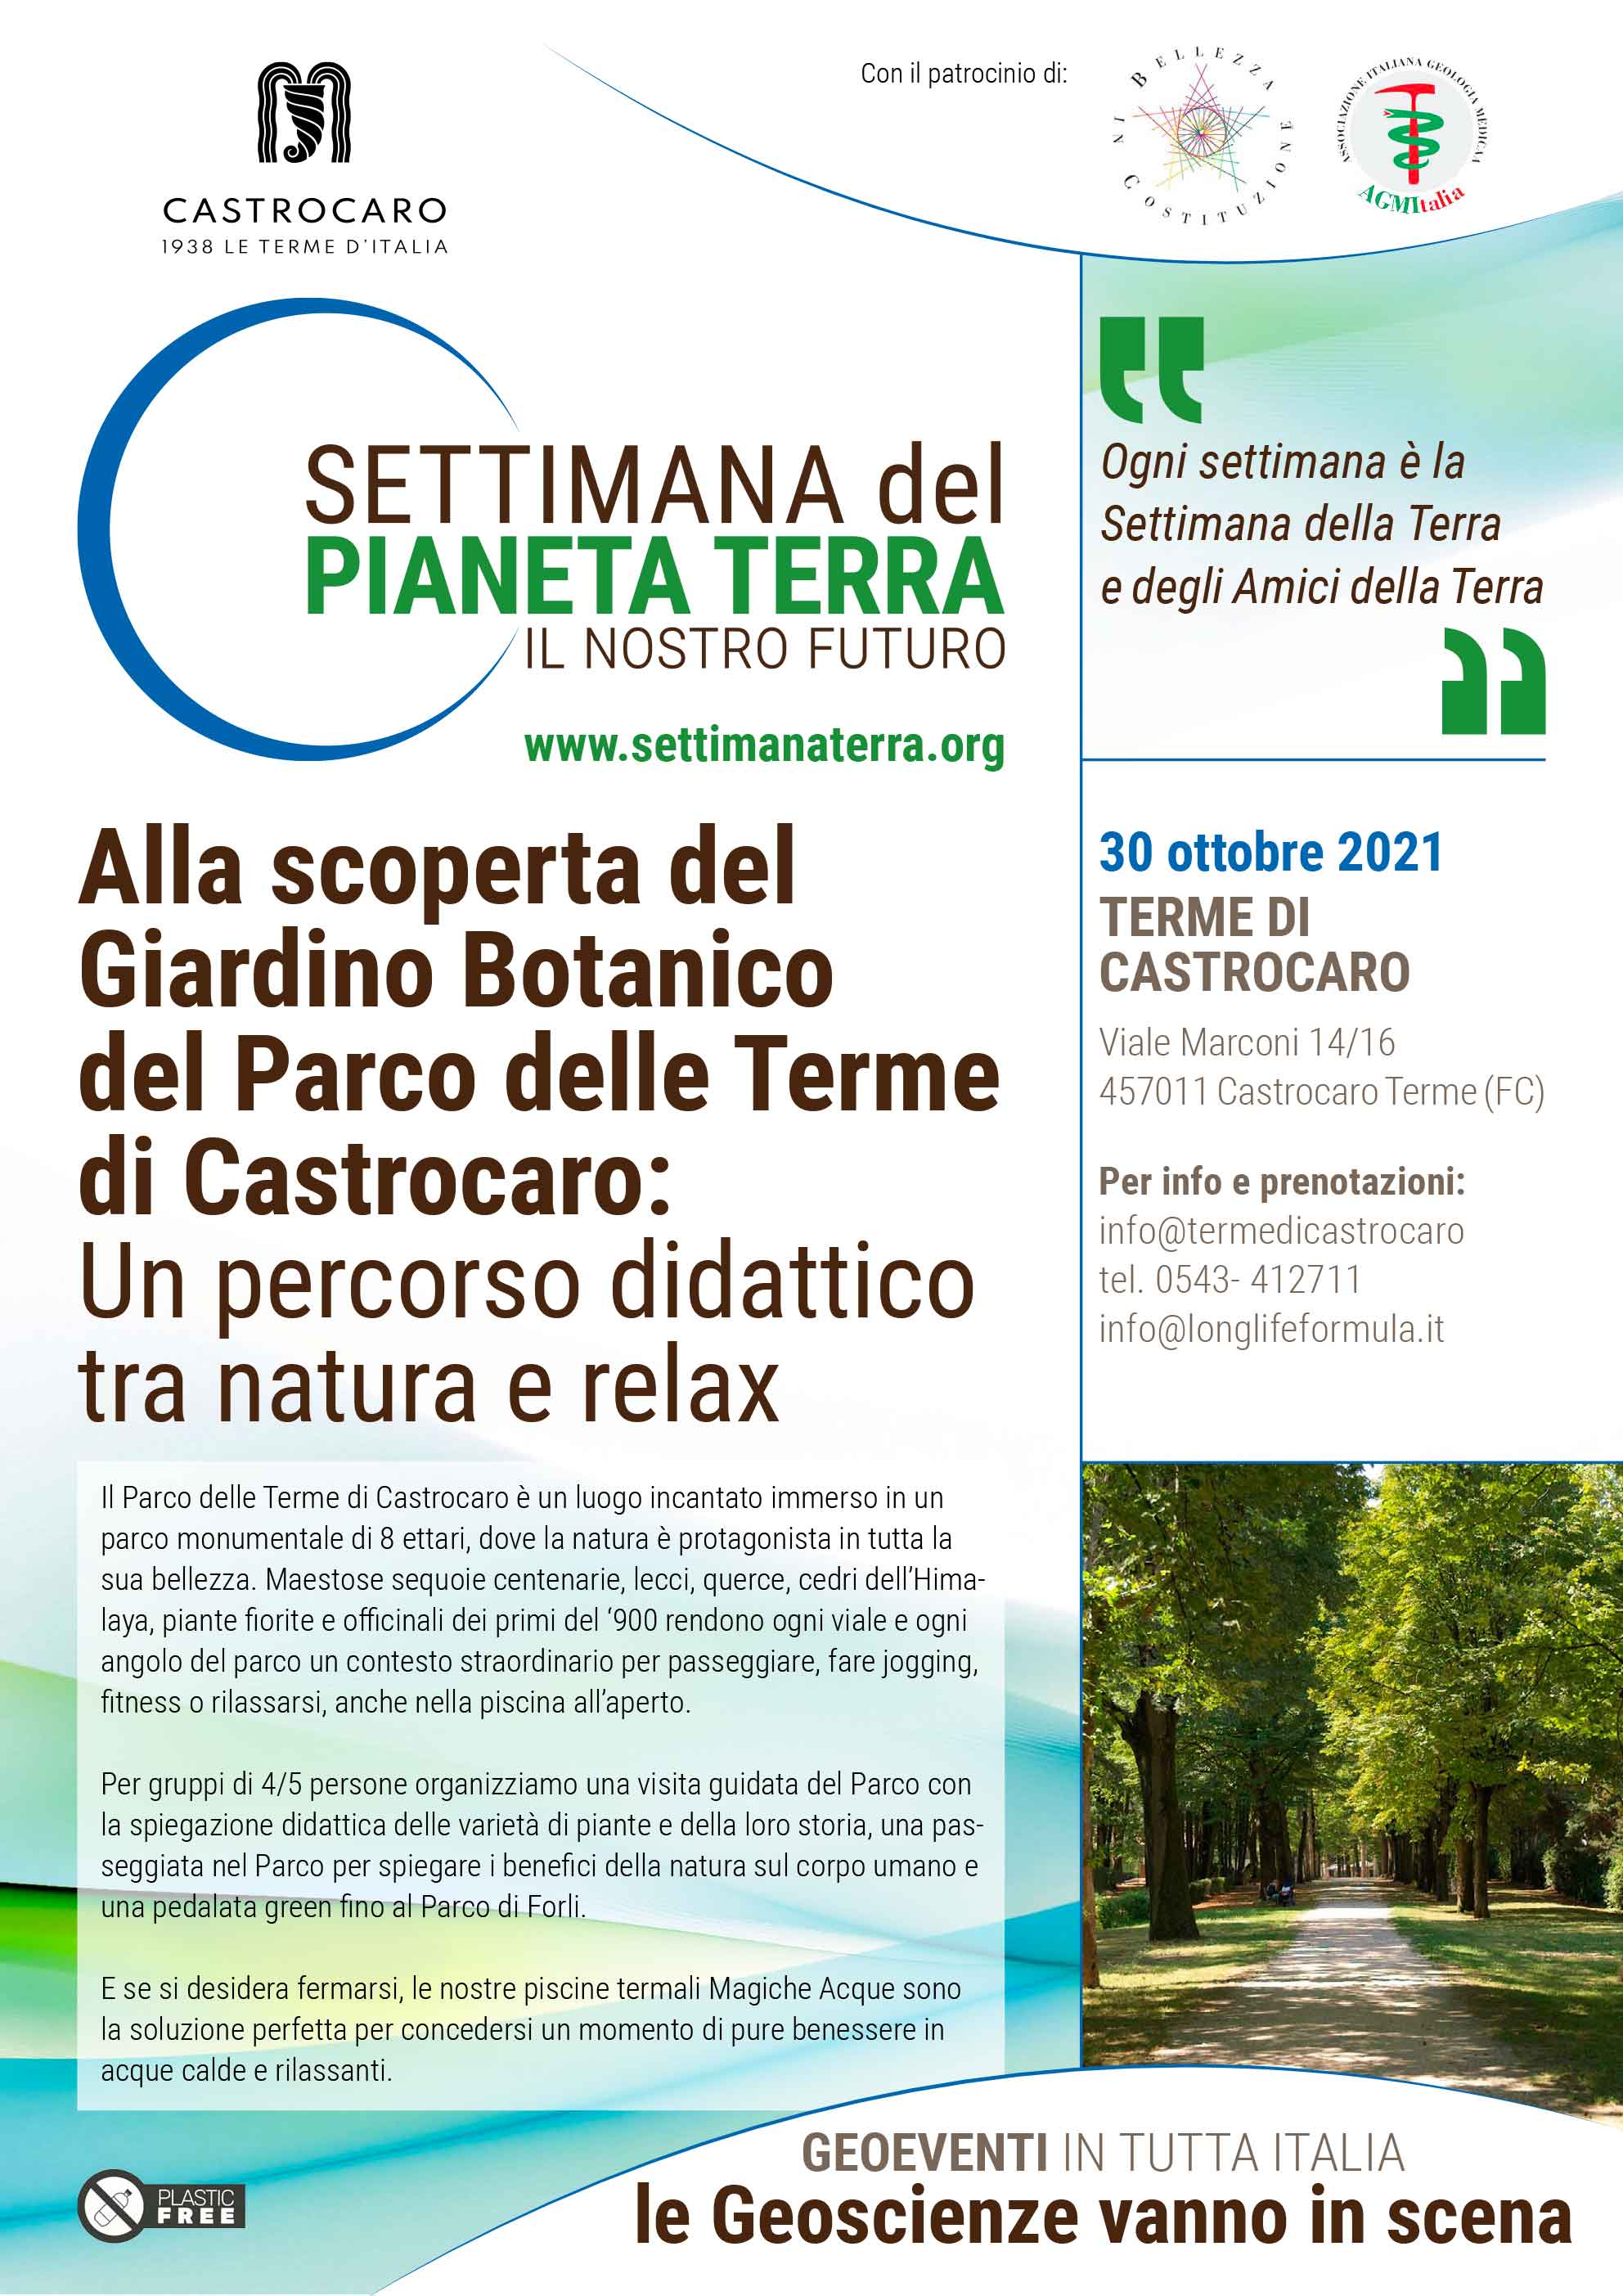 Alla scoperta del Giardino Botanico del Parco delle Terme di Castrocaro: un percorso didattico tra natura e relax - 30 ottobre 2021